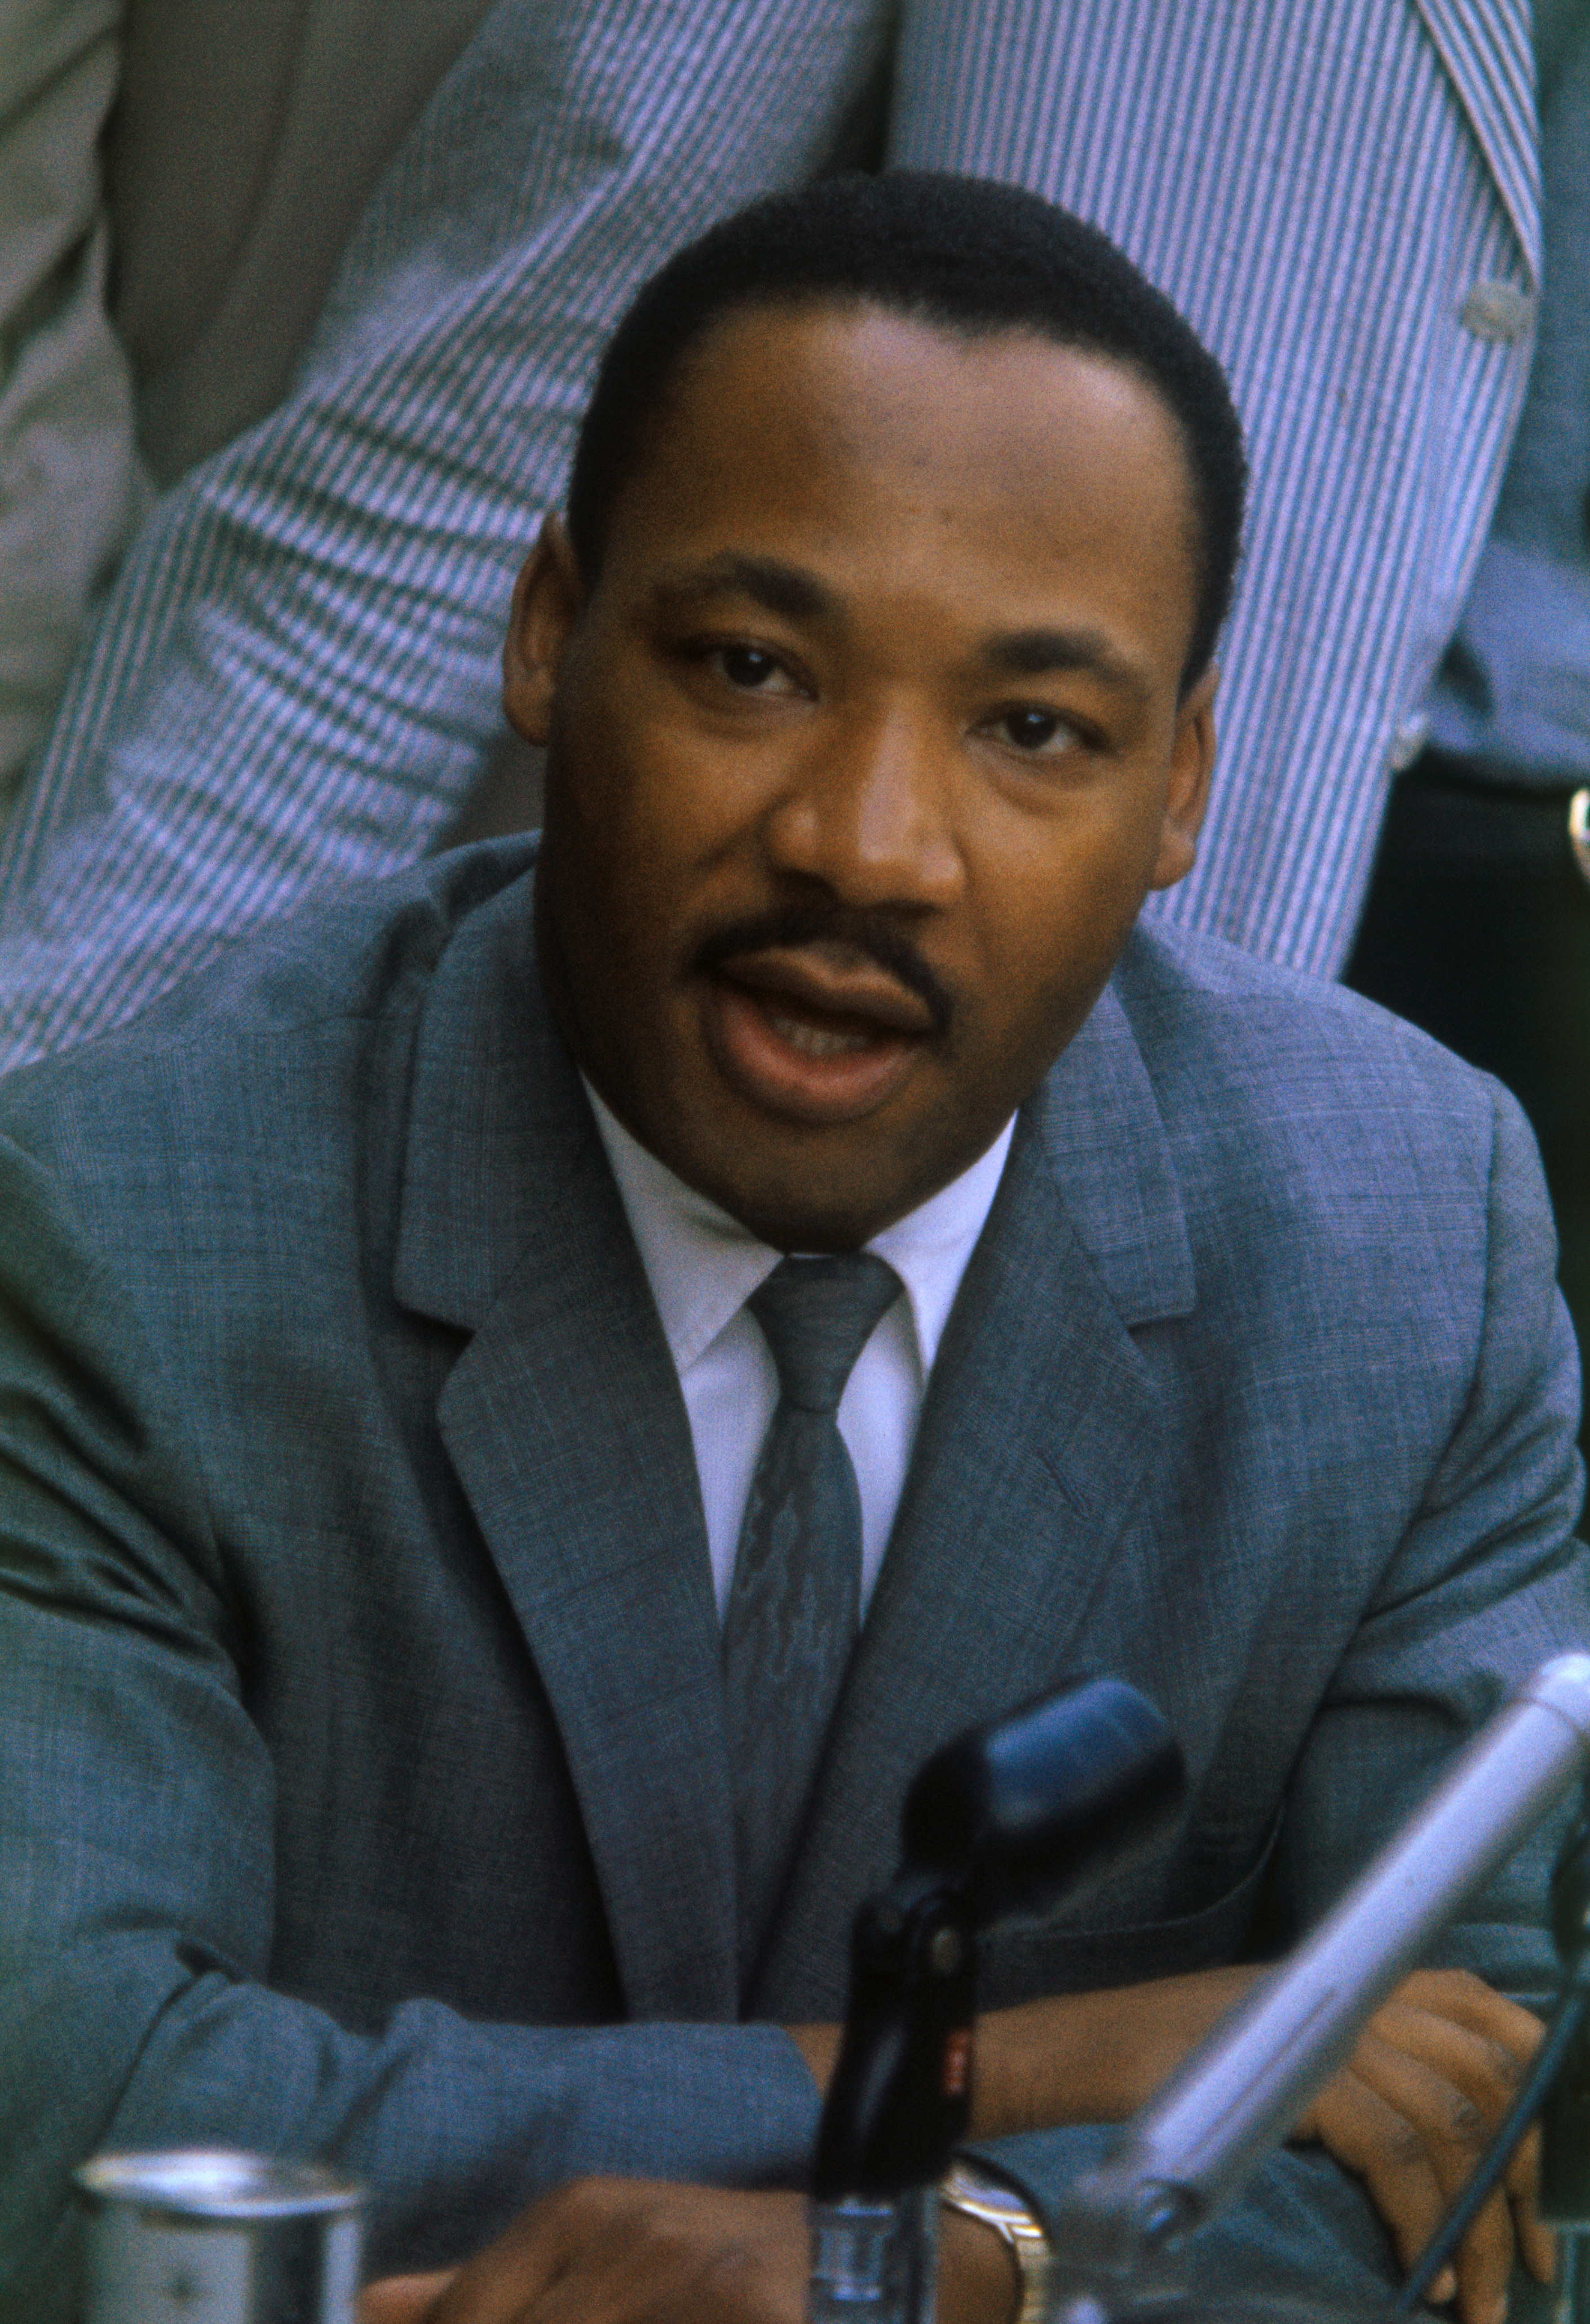 Dr King speaking